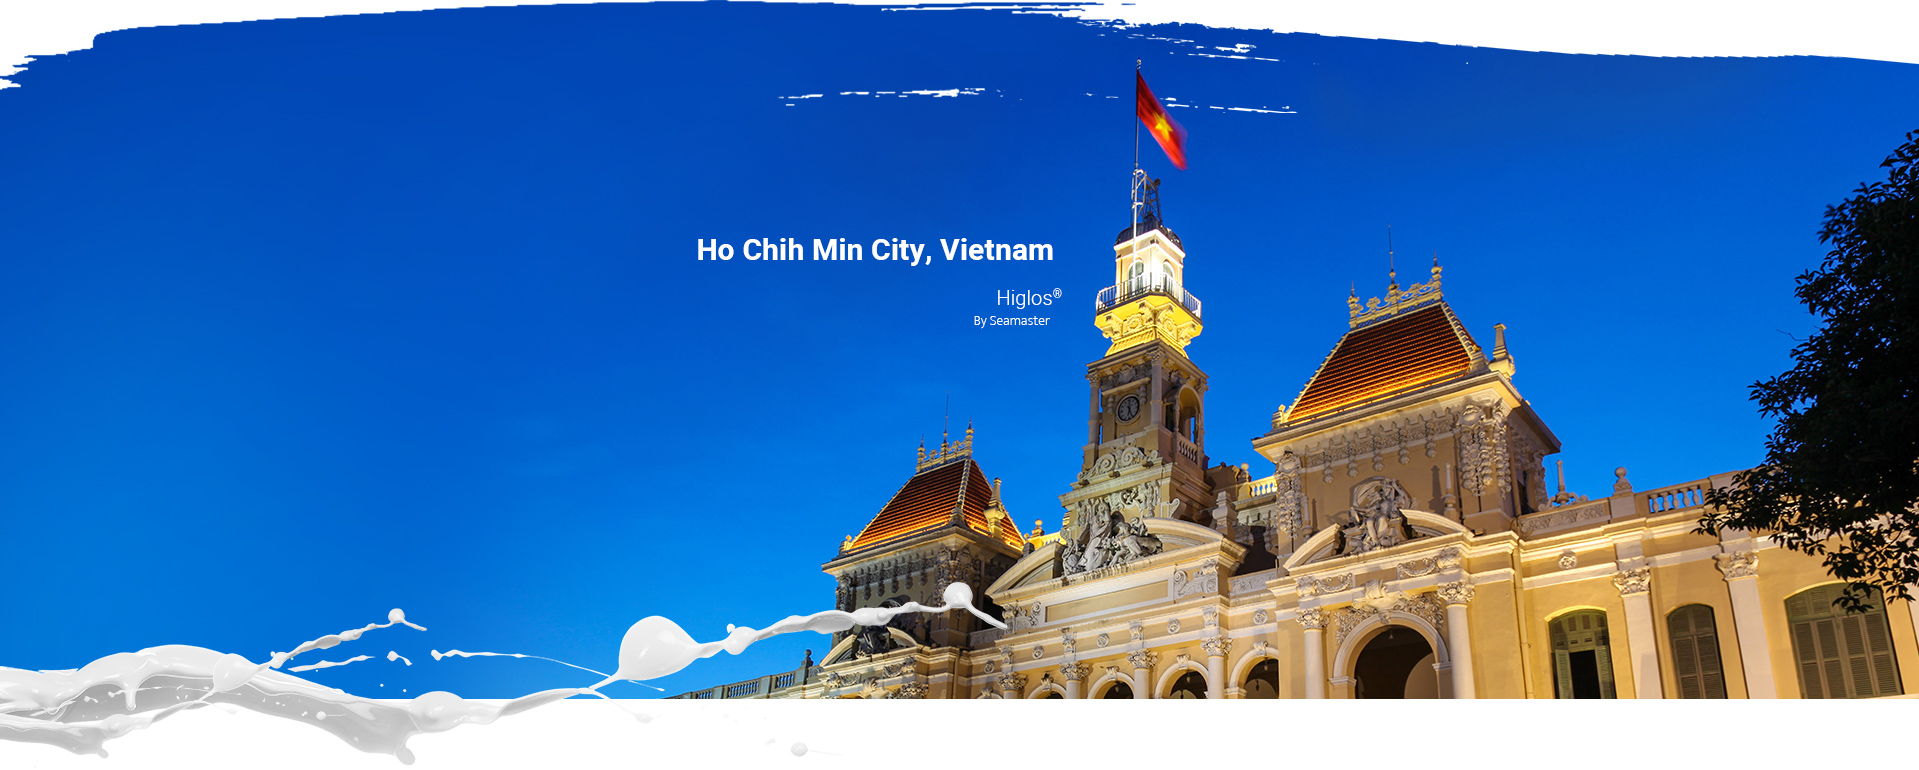 Ho Chih Min City